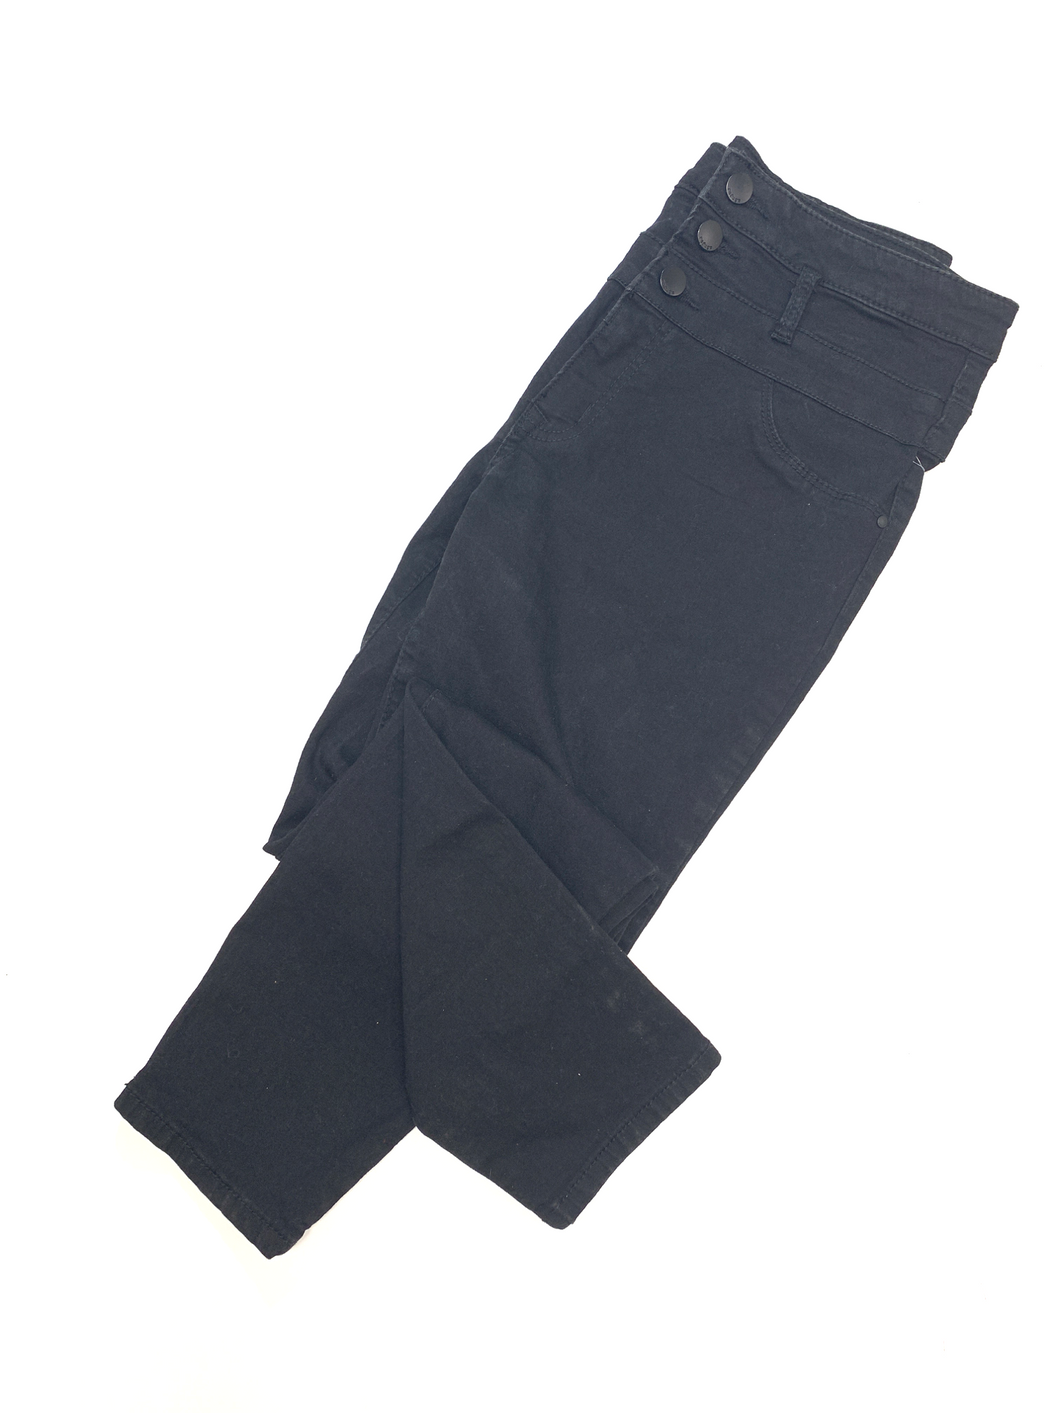 Refuge Pants Size 7/8 (29)